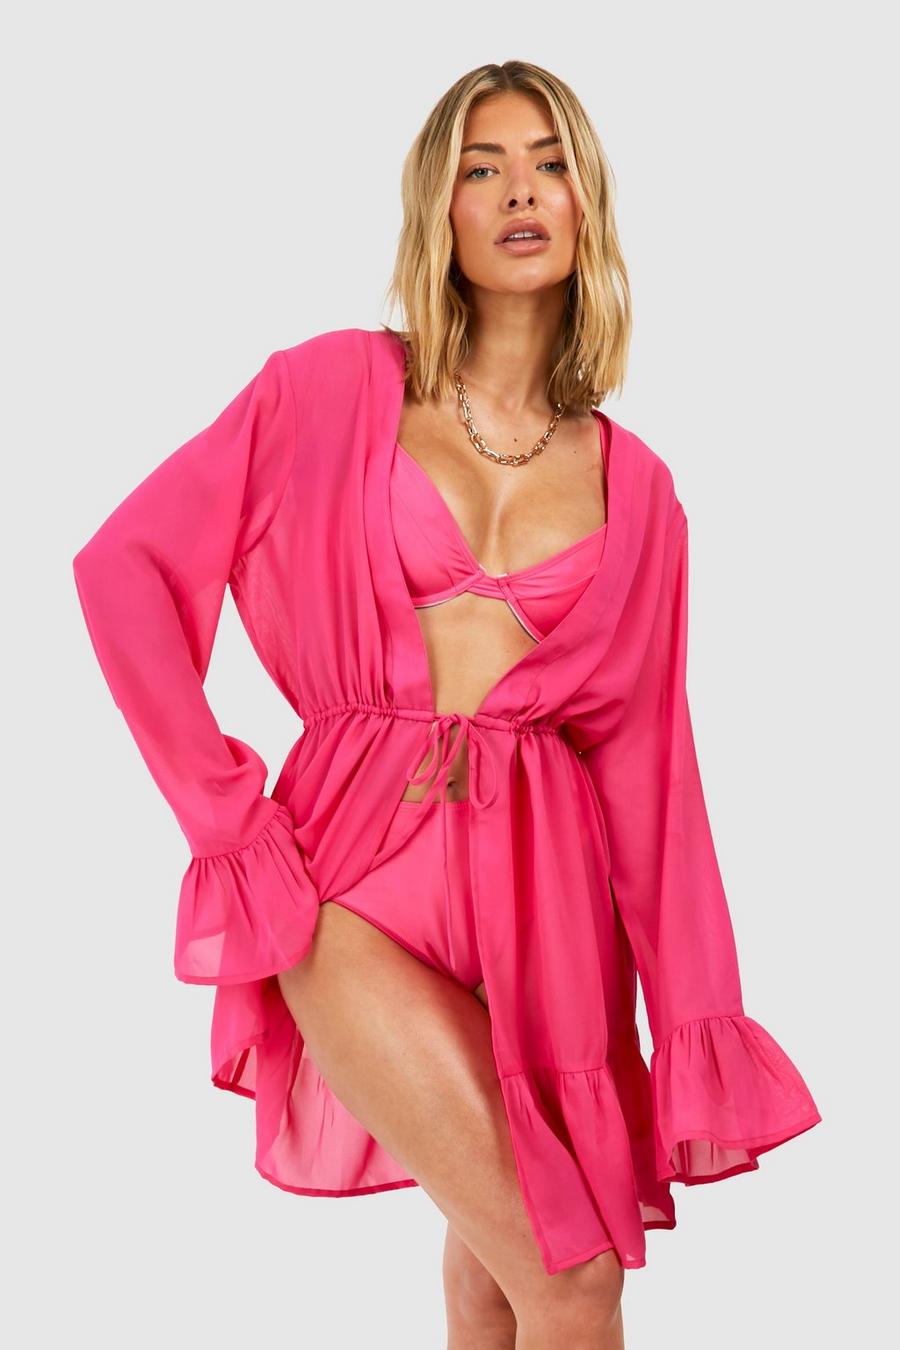 Gestufter Strand-Kimono mit Schnür-Detail, Hot pink